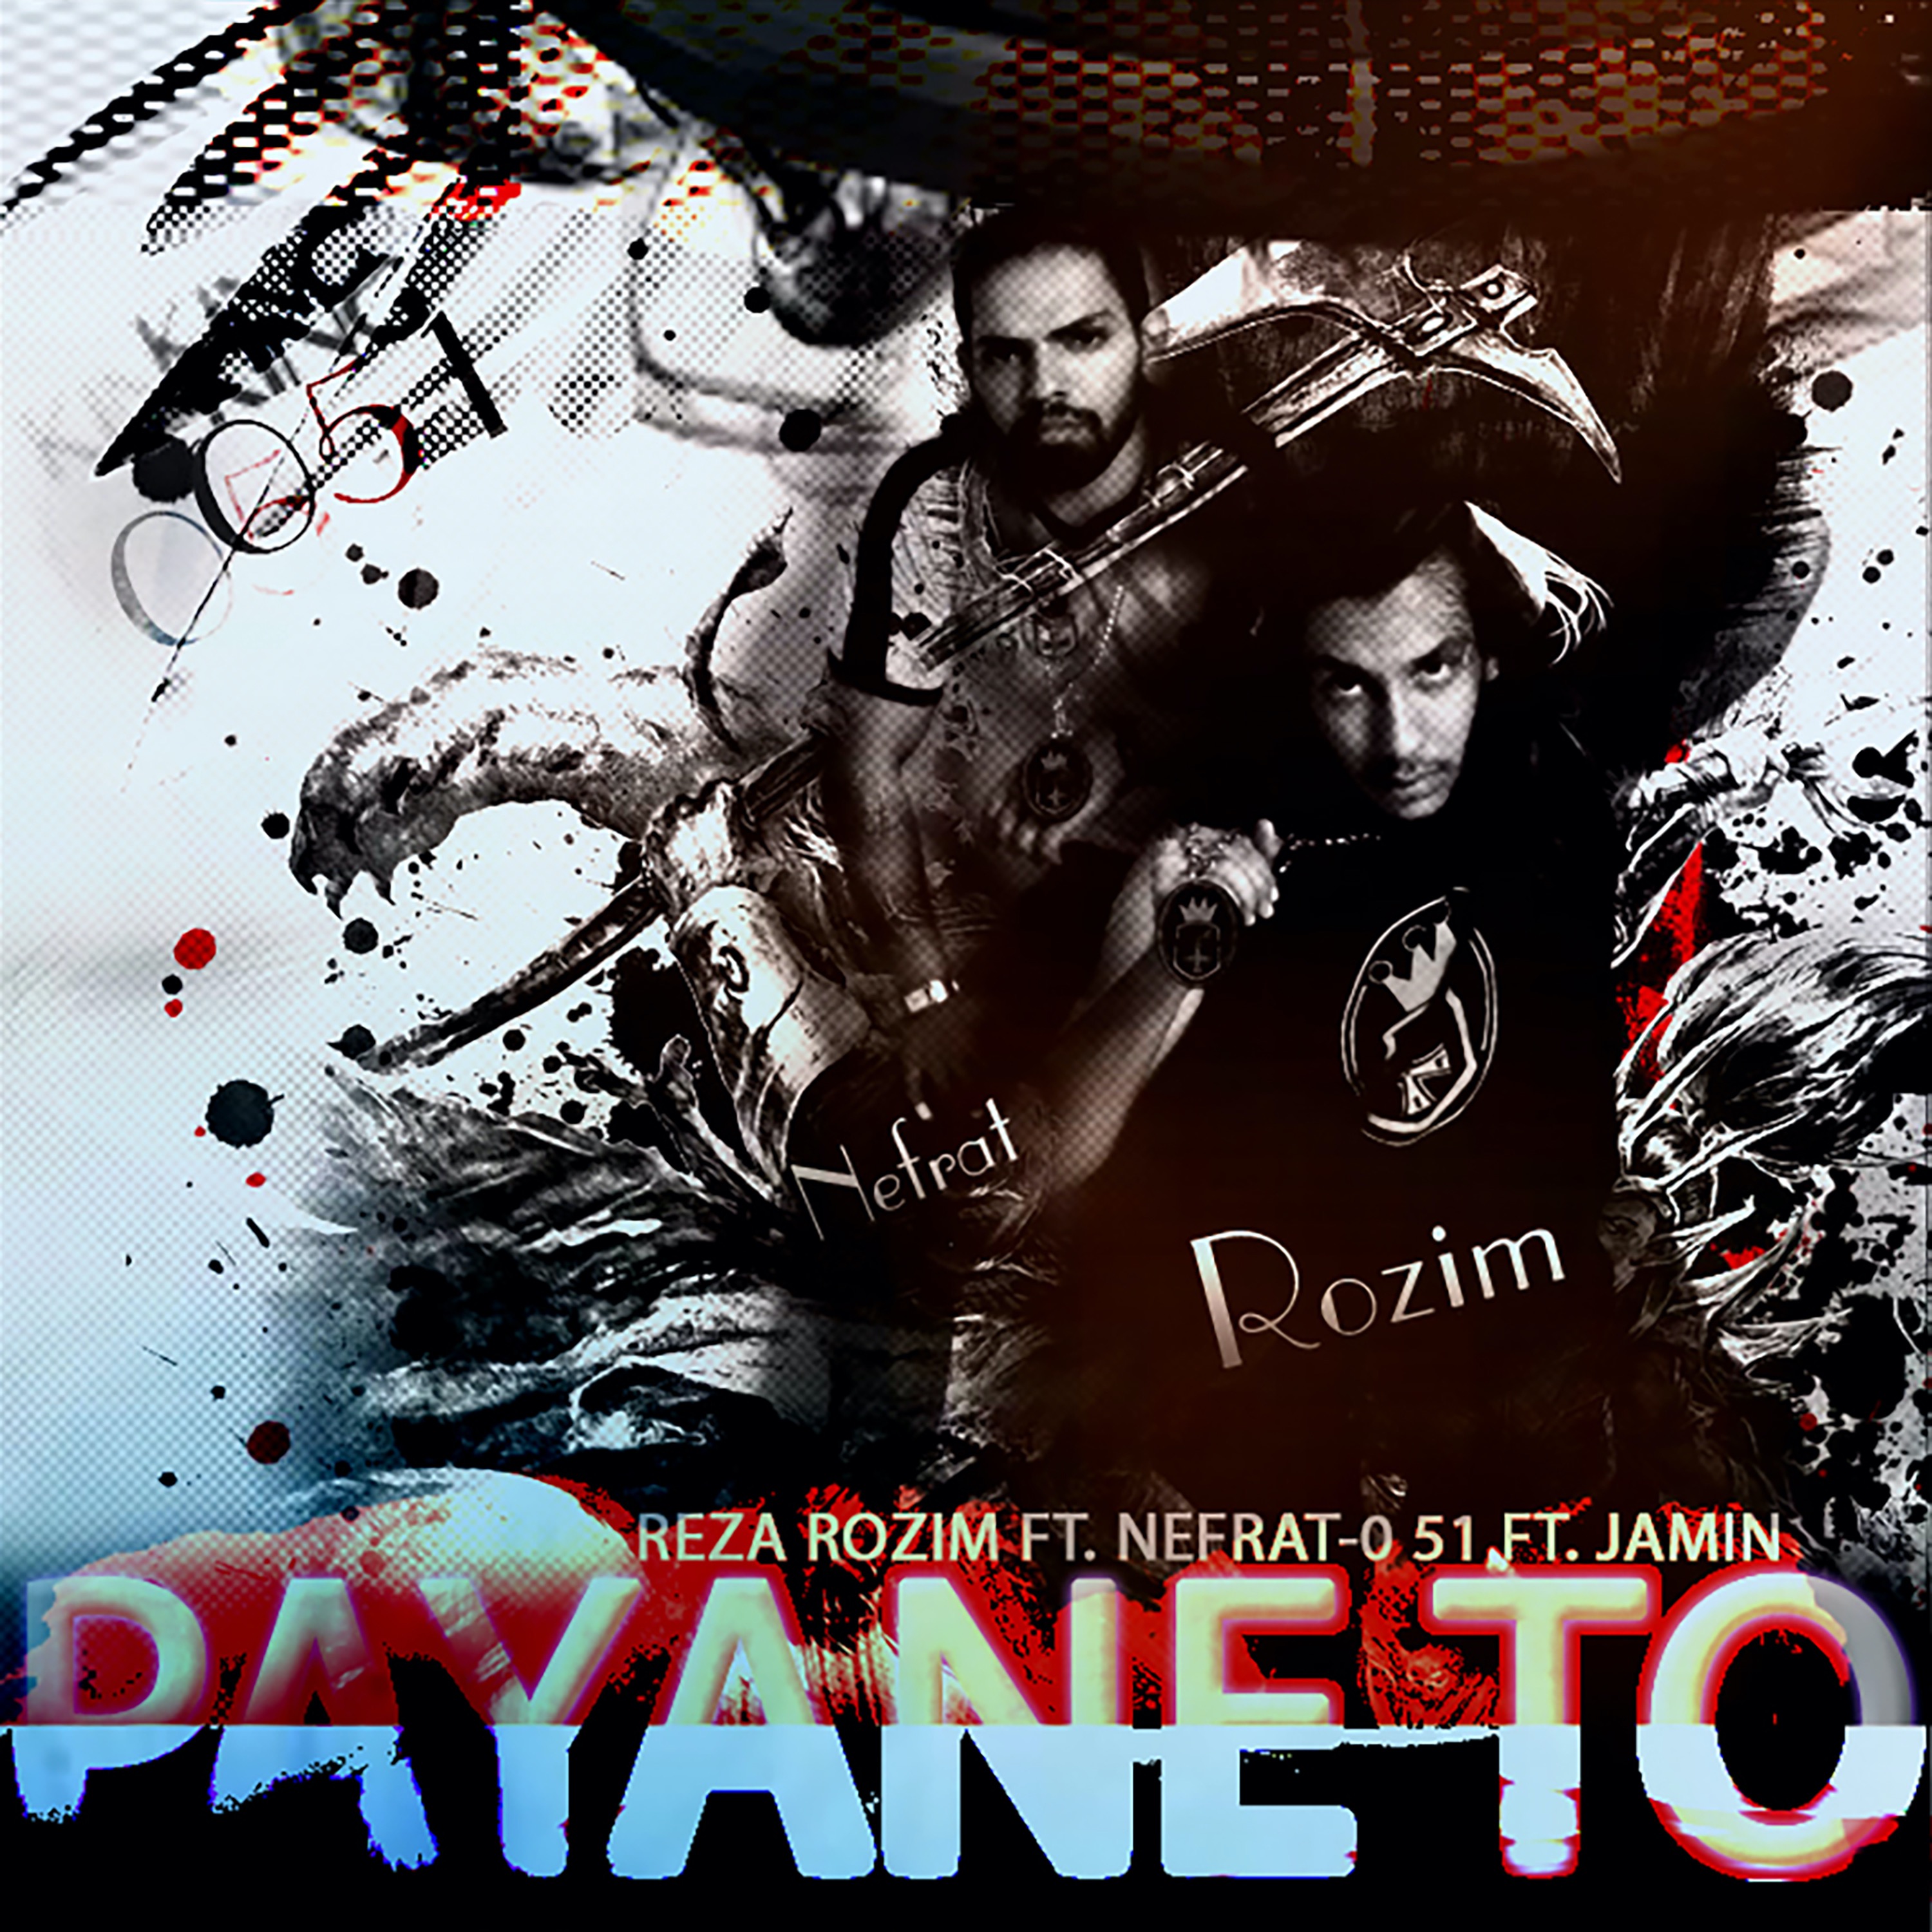  دانلود آهنگ جدید رُظیم - پایان تو | Download New Music By Reza Rozim - Payane To (feat. Nefrat 051 & Jamin)